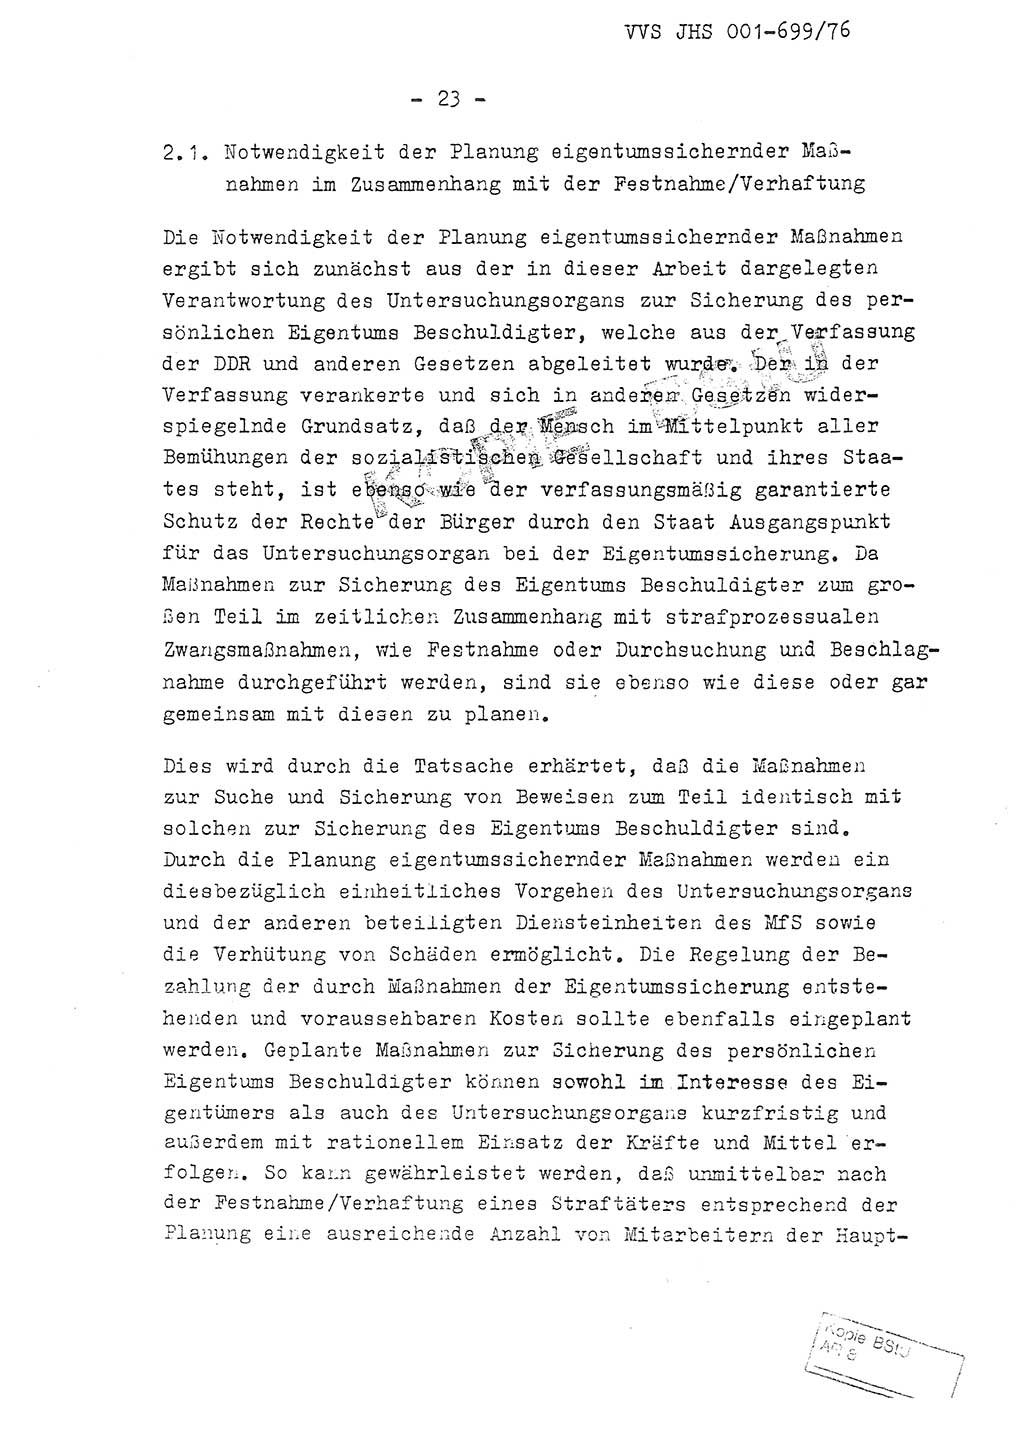 Fachschulabschlußarbeit Leutnant Volkmar Taubert (HA Ⅸ/9), Leutnant Axel Naumann (HA Ⅸ/9), Unterleutnat Detlef Debski (HA Ⅸ/9), Ministerium für Staatssicherheit (MfS) [Deutsche Demokratische Republik (DDR)], Juristische Hochschule (JHS), Vertrauliche Verschlußsache (VVS) 001-699/76, Potsdam 1976, Seite 23 (FS-Abschl.-Arb. MfS DDR JHS VVS 001-699/76 1976, S. 23)